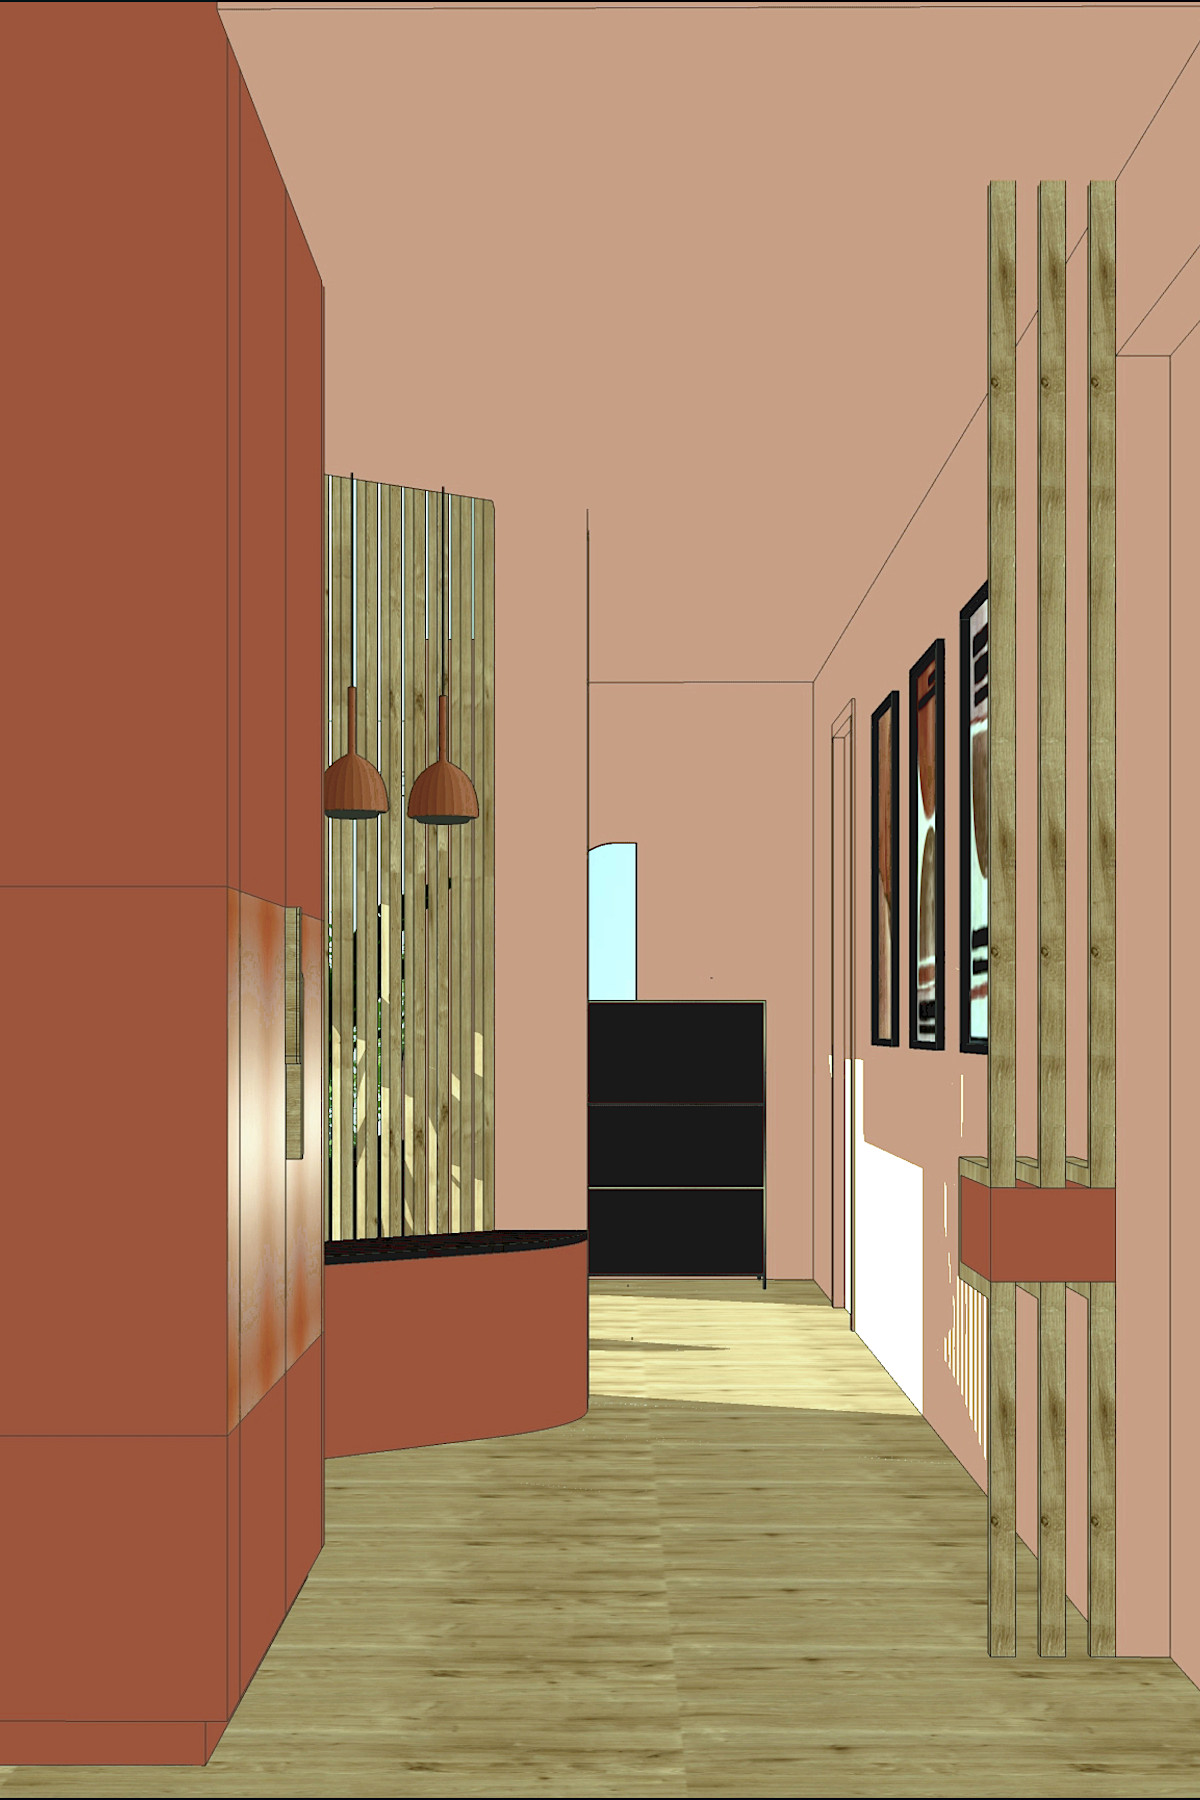 Agencement d'intérieur création d'une entrée et séparation par claustras, Choix du mobilier couleurs et papier peint. Projet chez Gabriela. Slide Vue 3D et réalisation.